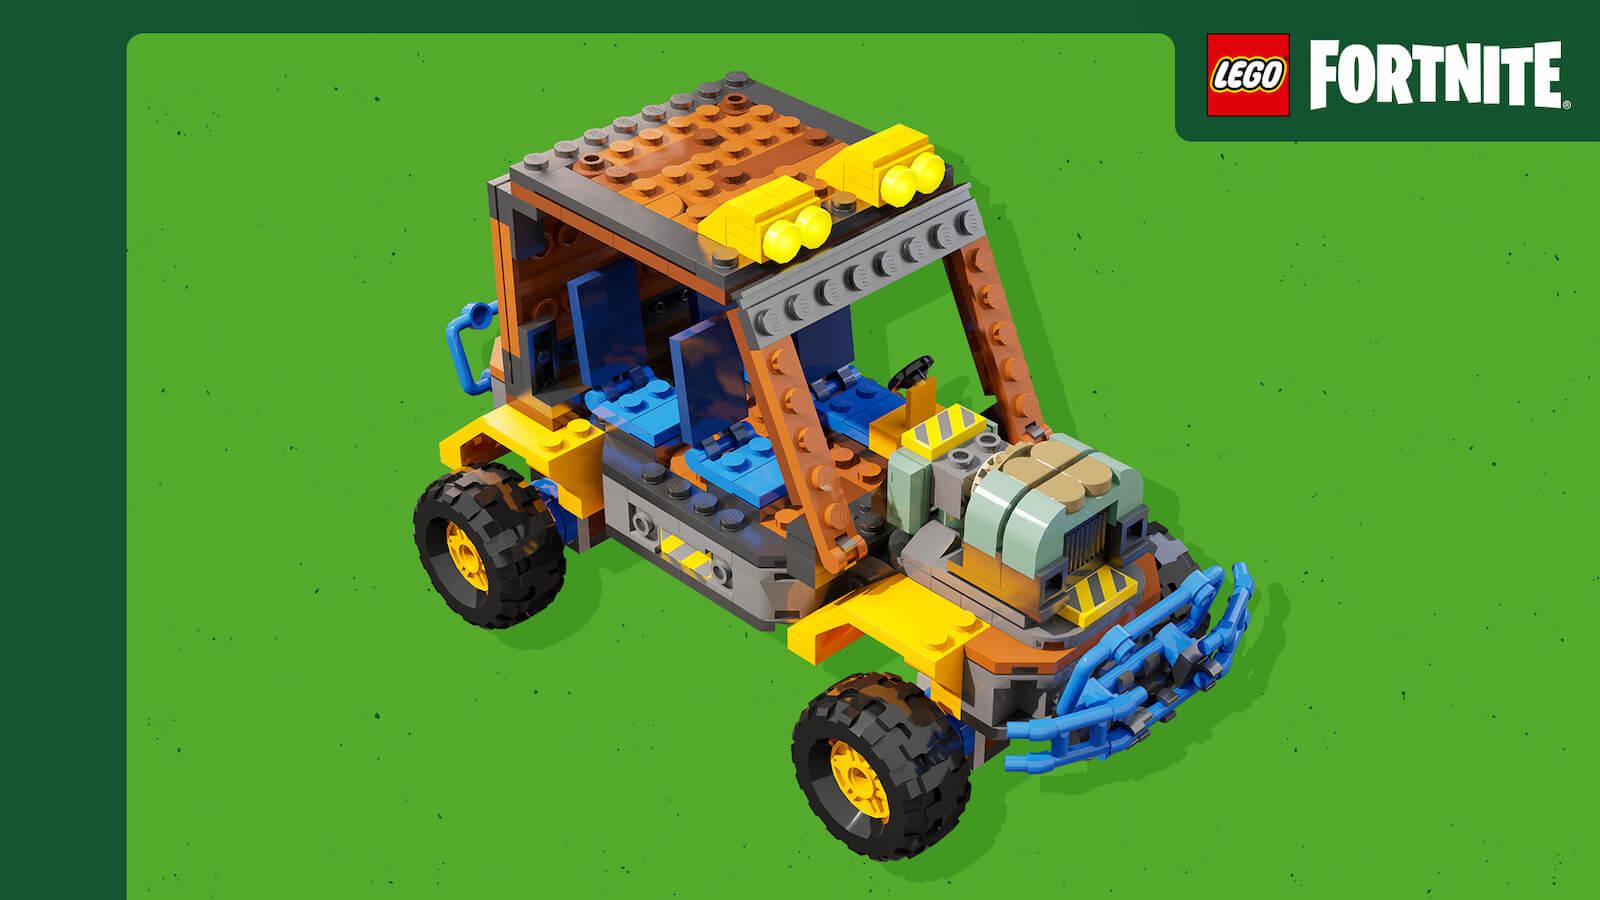 LEGO Fortnite vehicle